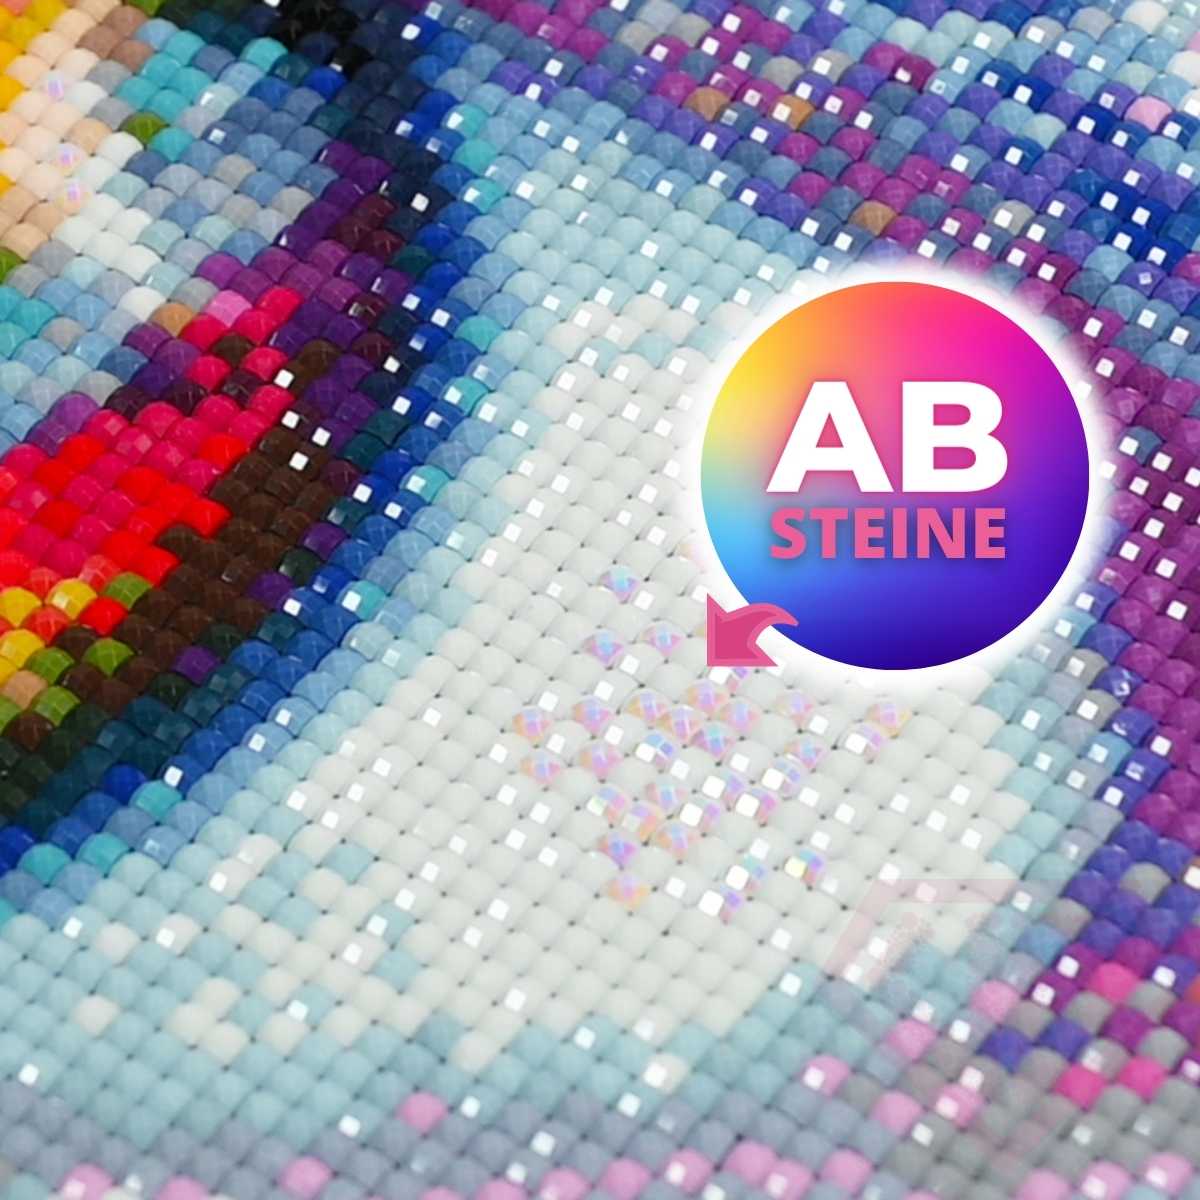 Diamond Painting AB Steine Blumenstrauß am Fenster - Unique-Diamond